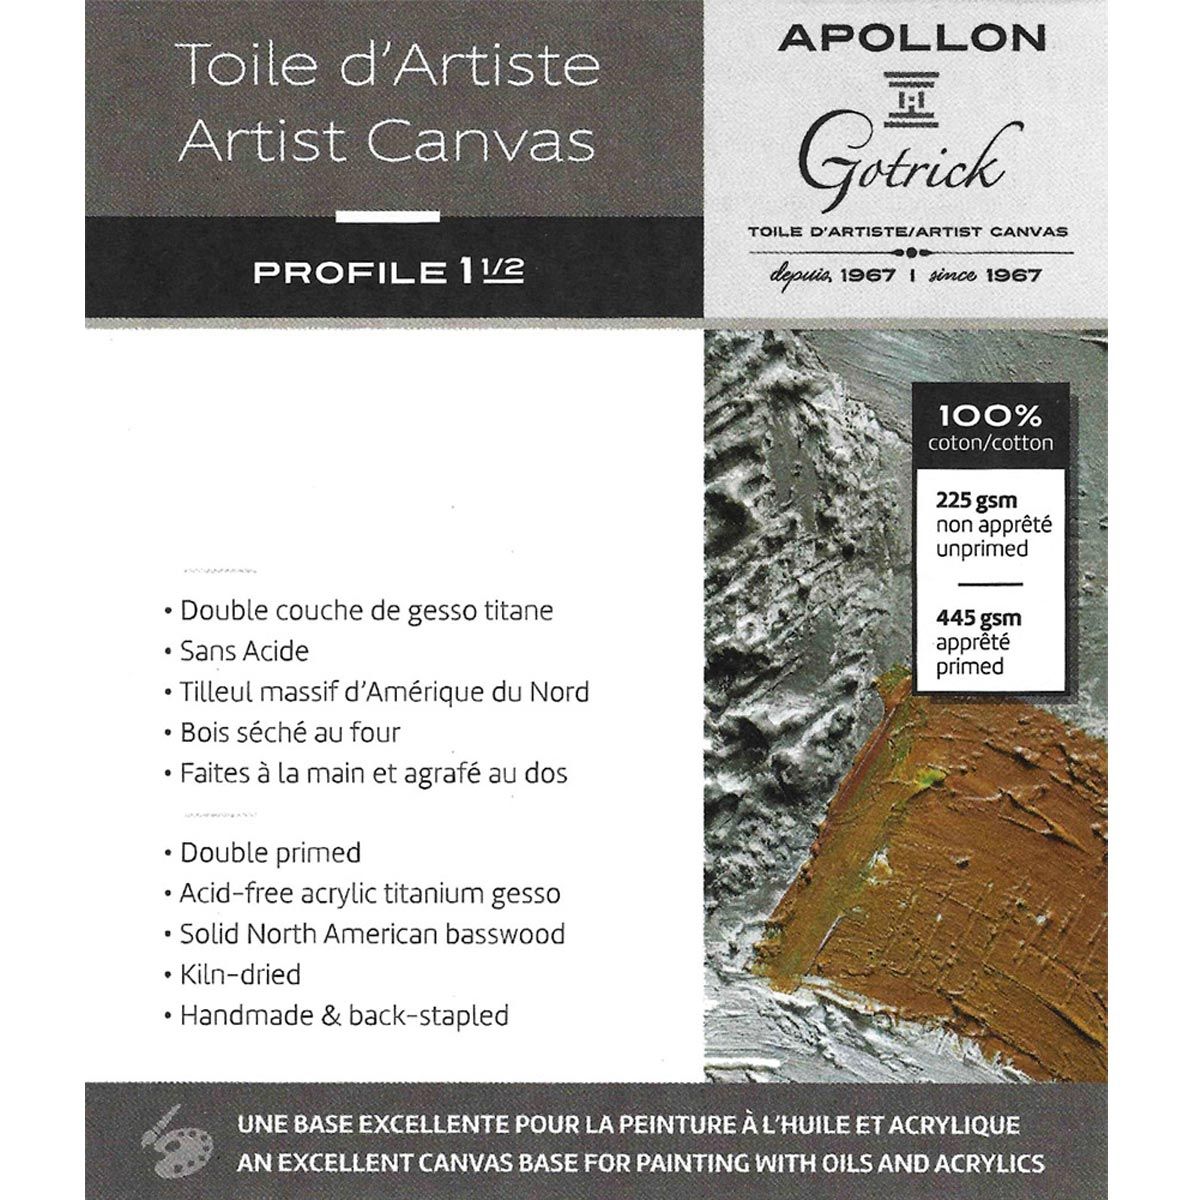 Apollon Gotrick Gallery Artist Canvas Profile 1½" - 24" x 48"